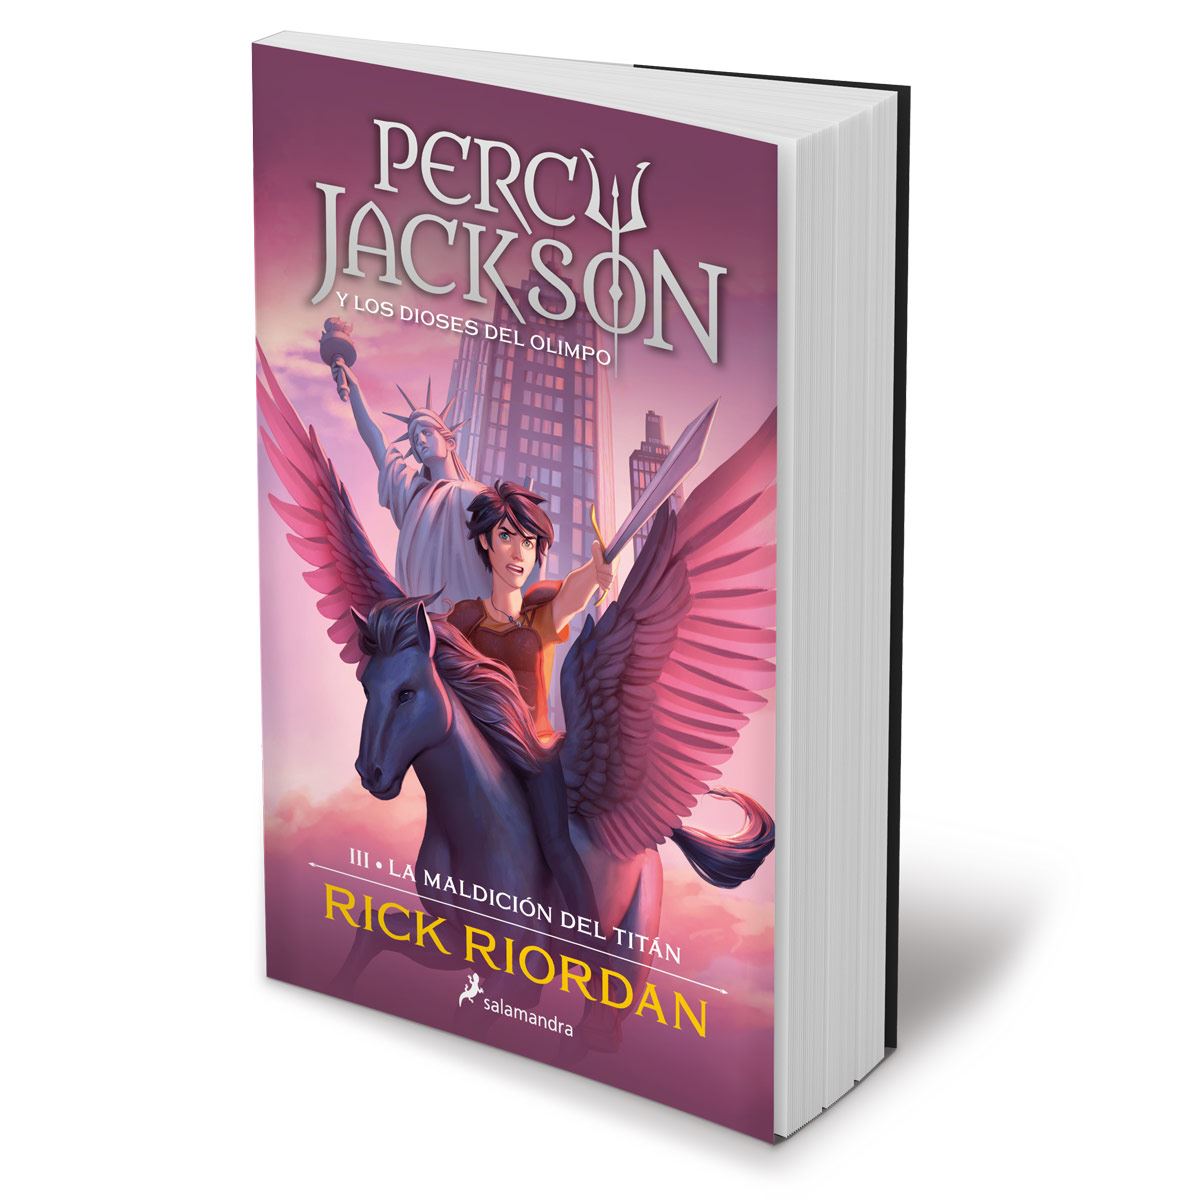 La maldición del Titán (Percy Jackson y los dioses del Olimpo 3) ::  RIORDAN, Rick :: Salamandra :: Libros :: Dideco